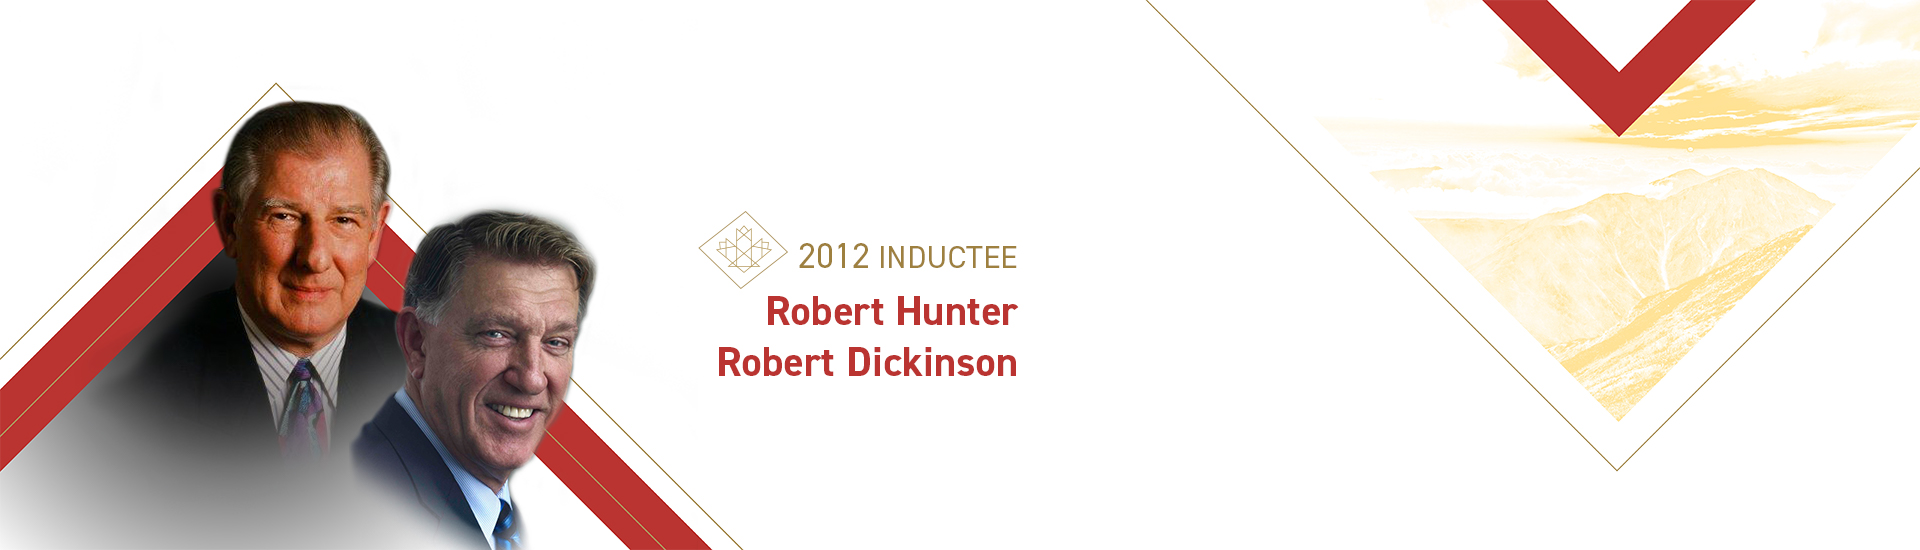 Robert Hunter (1927-2007) et Robert Dickinson (b. 1948)